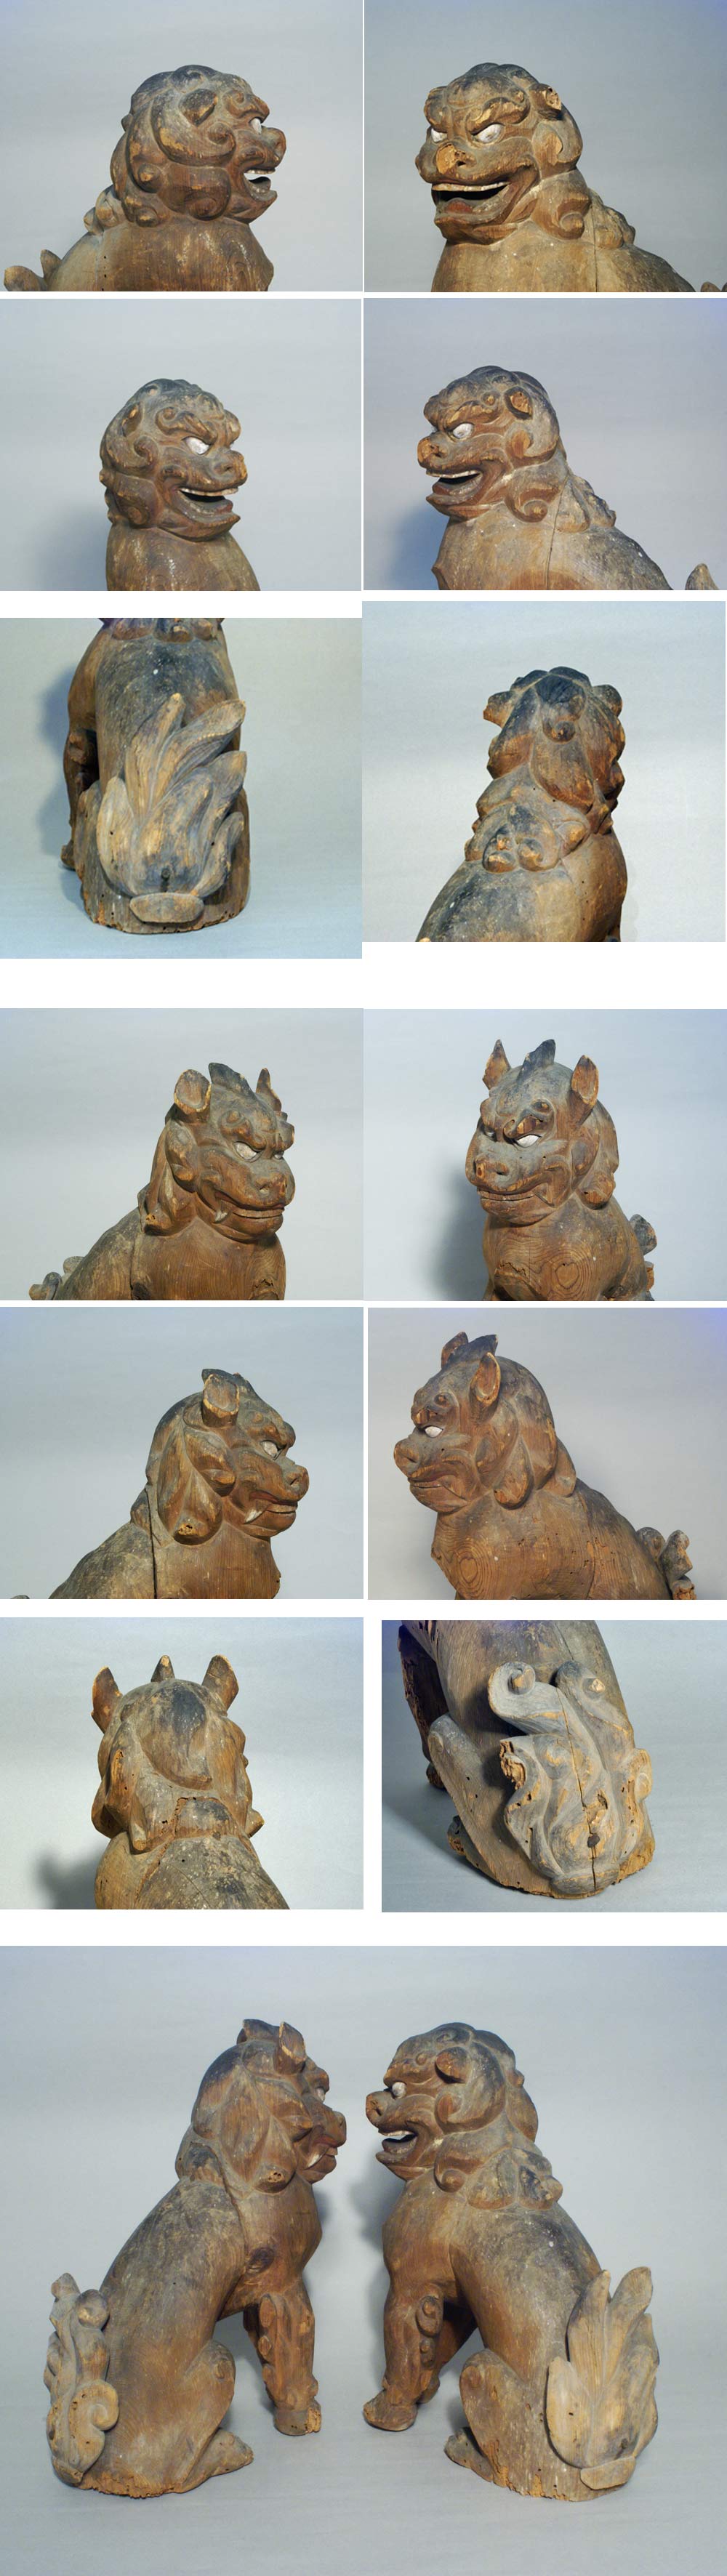 風招(古美術たなか) - 獅子と狛犬 | 古美術品専門サイト fufufufu.com